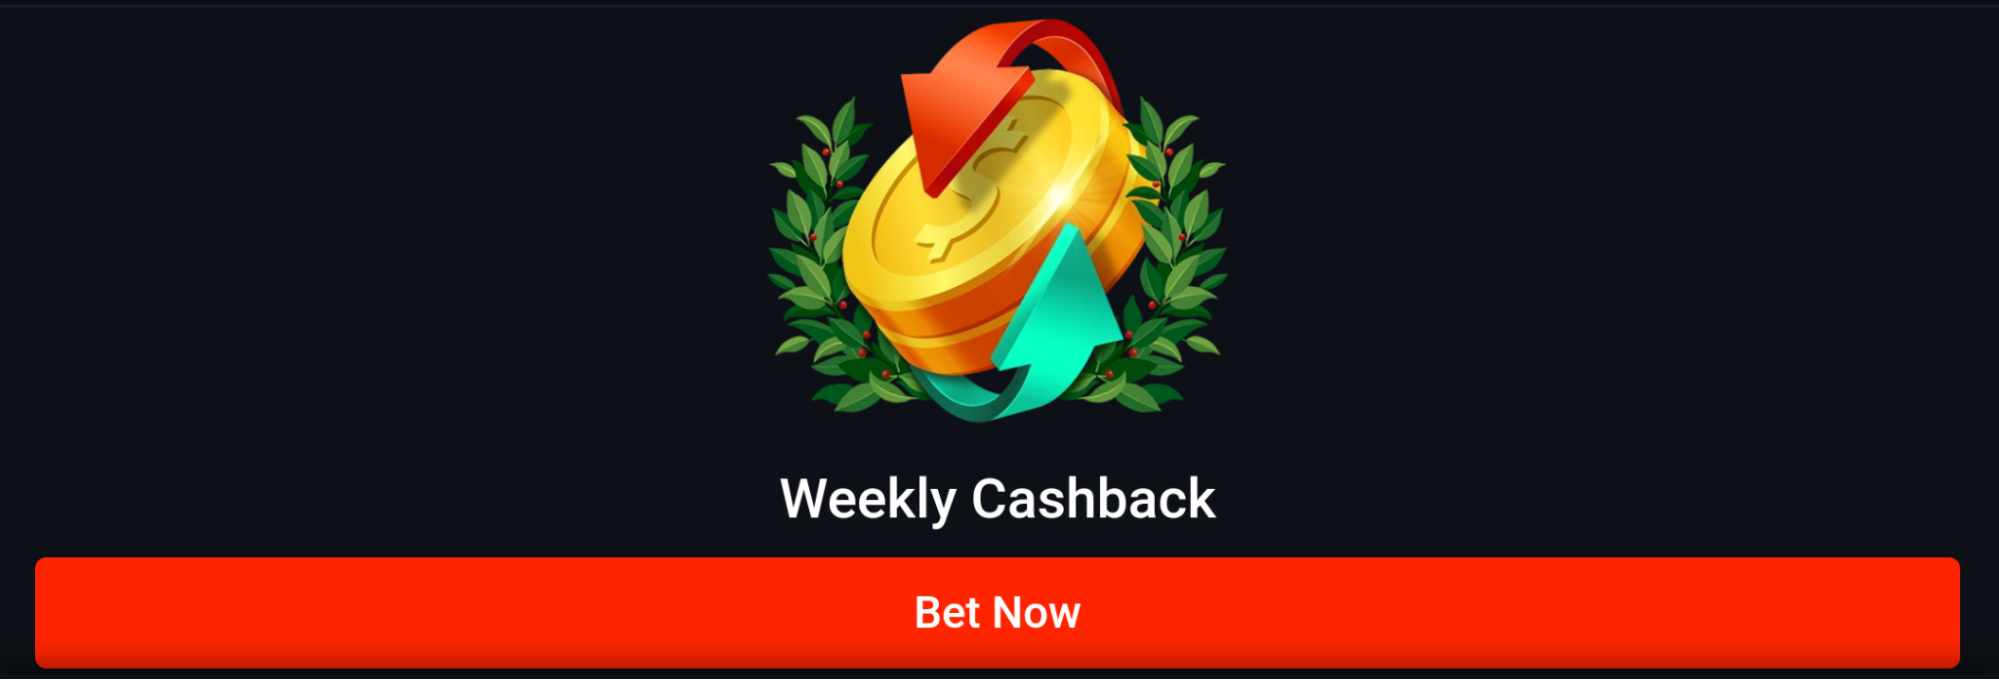 Pin Up Bangladesh Weekly Cashback